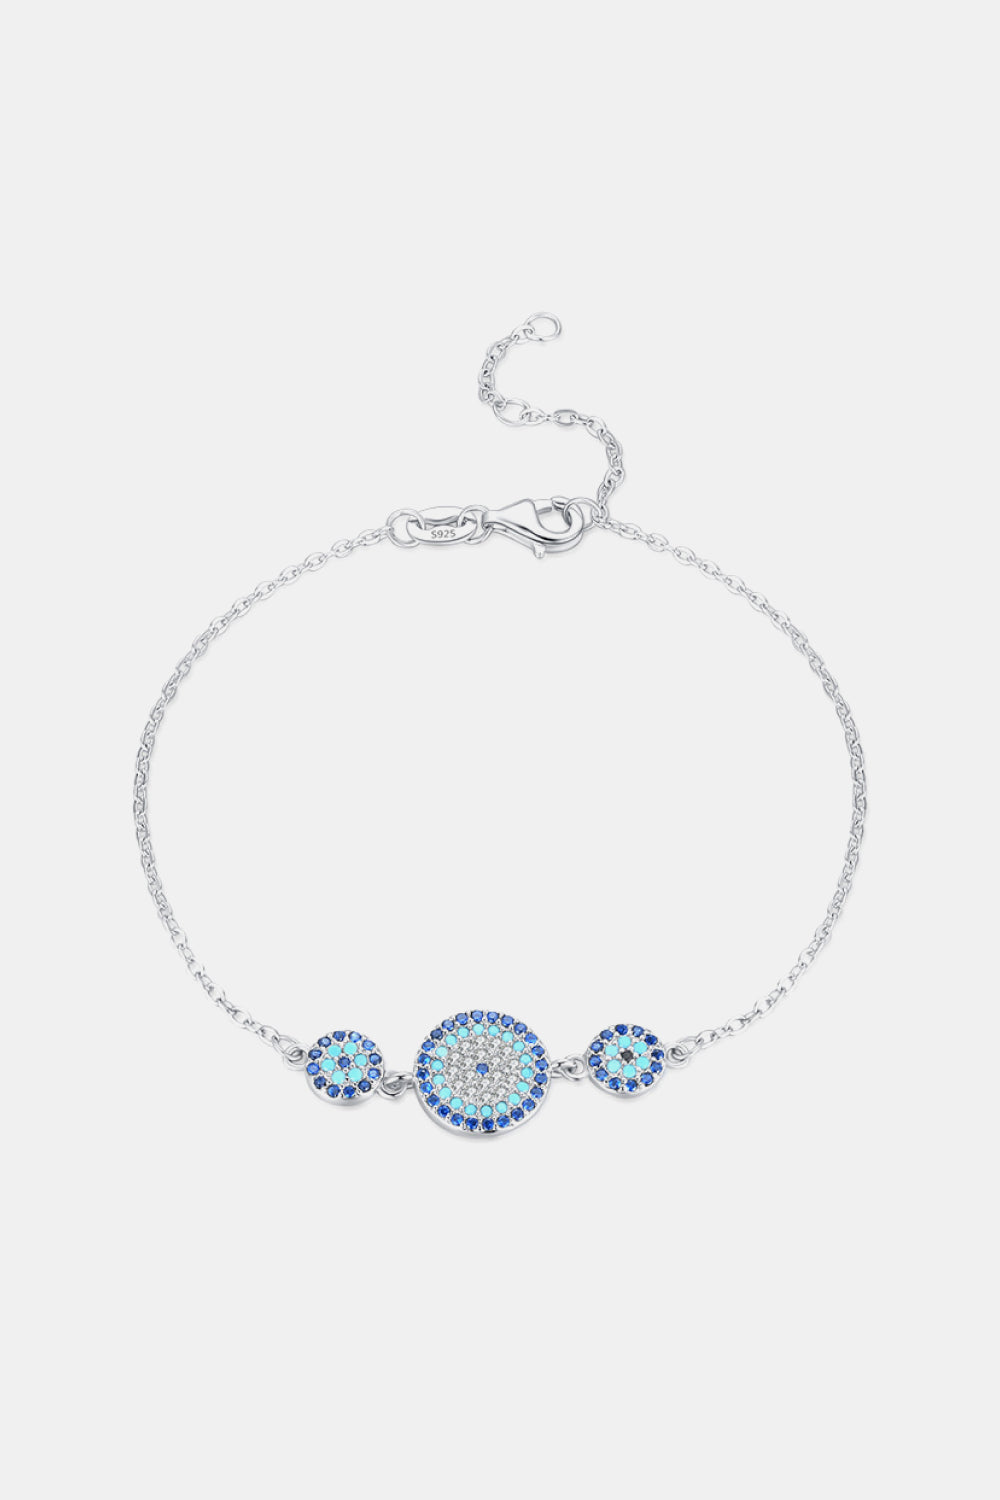 925 Sterling Silver Artificial Turquoise Bracelet - Silver / One Size - Women’s Jewelry - Bracelets - 2 - 2024